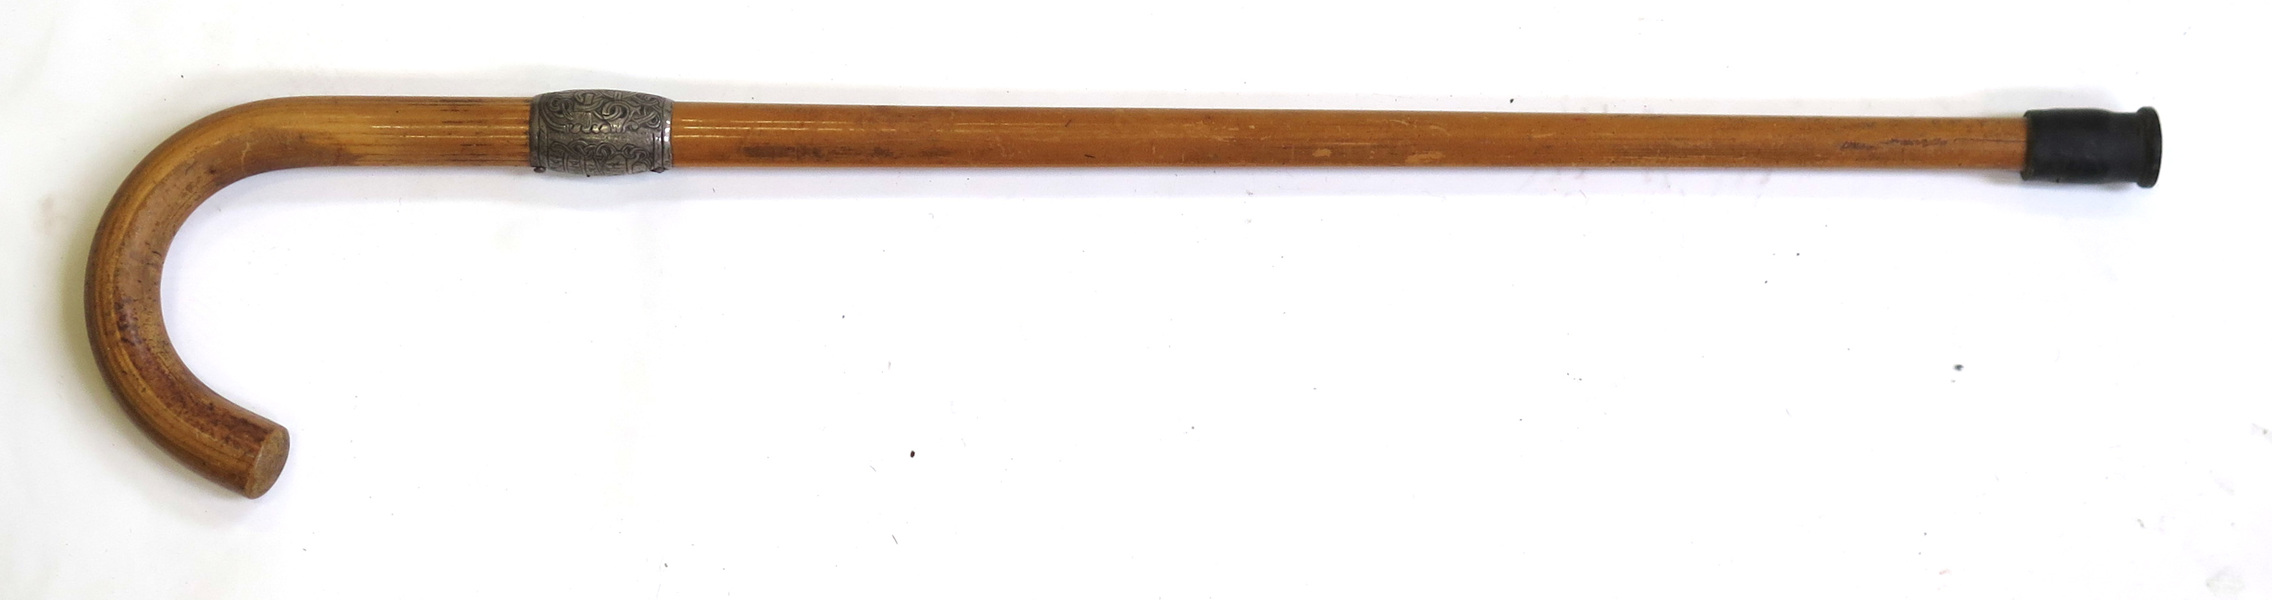 Käpp, bambu med silverbeslag, dekor av runor mm efter original på Jellingestenen,_13791a_lg.jpeg